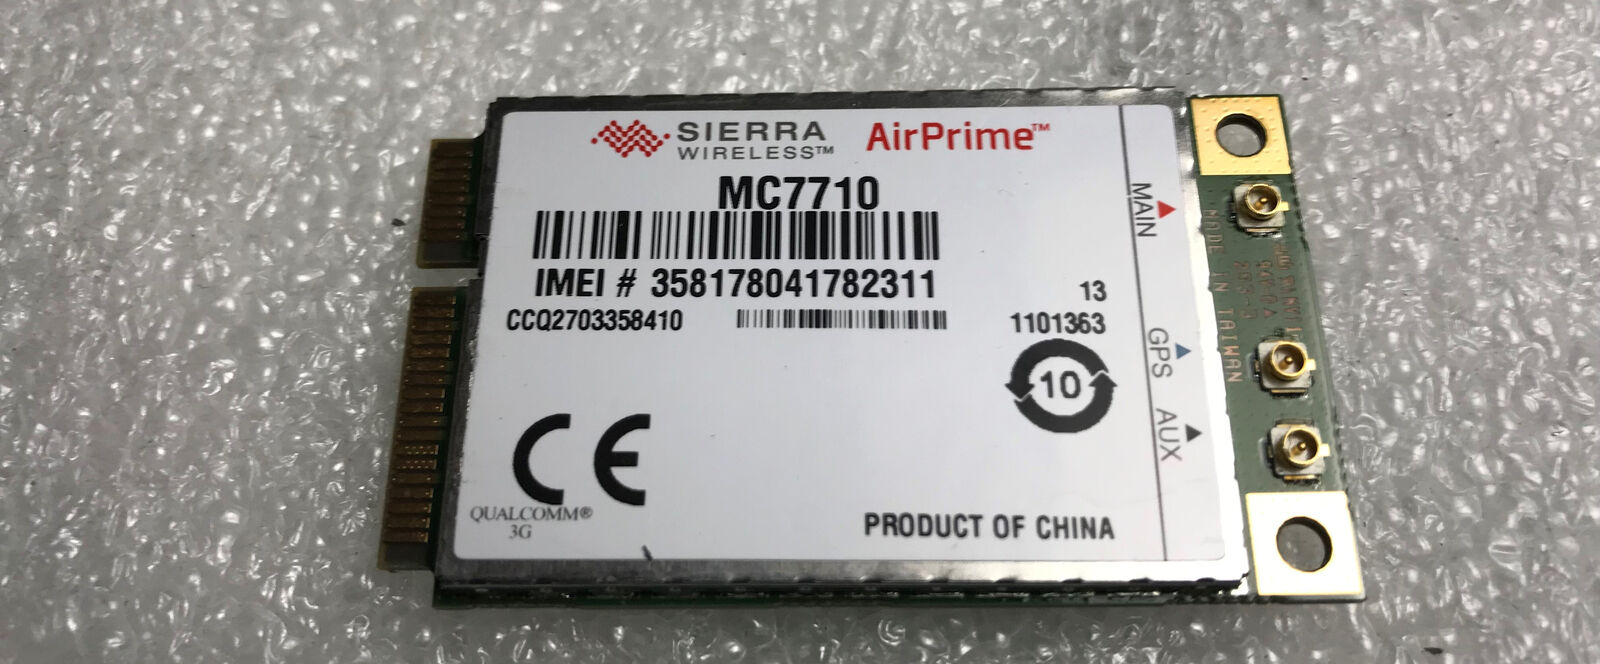 Sierra Wireless AirPrime mc7710 LTE/HSPA+ 4G 3G 800/900/2100MHz Module WWAN Card